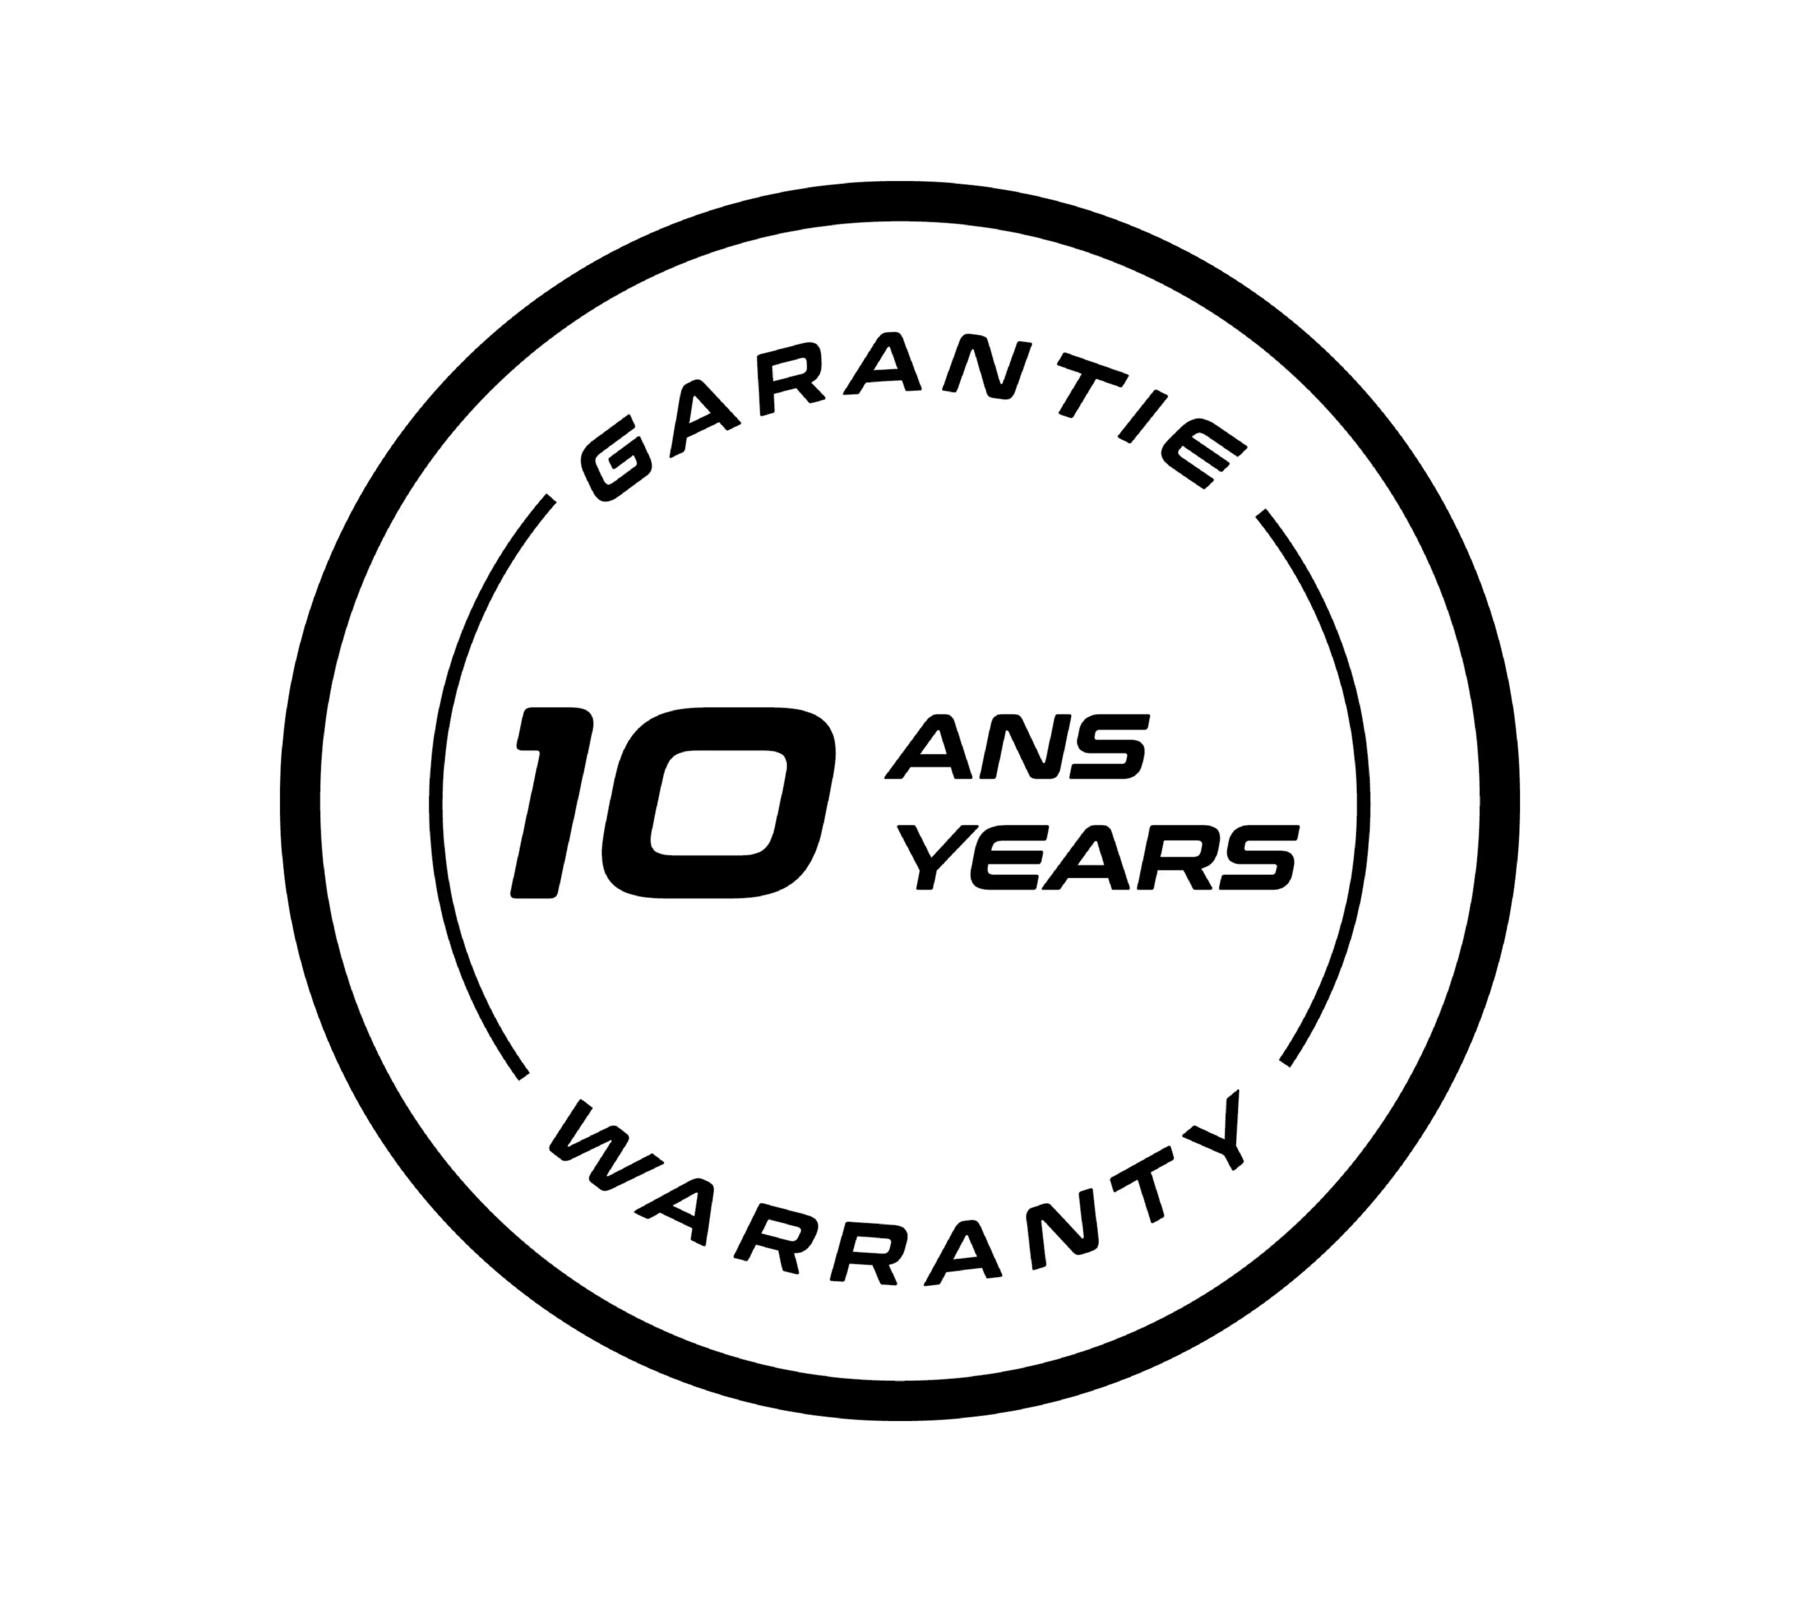 garantie10ans